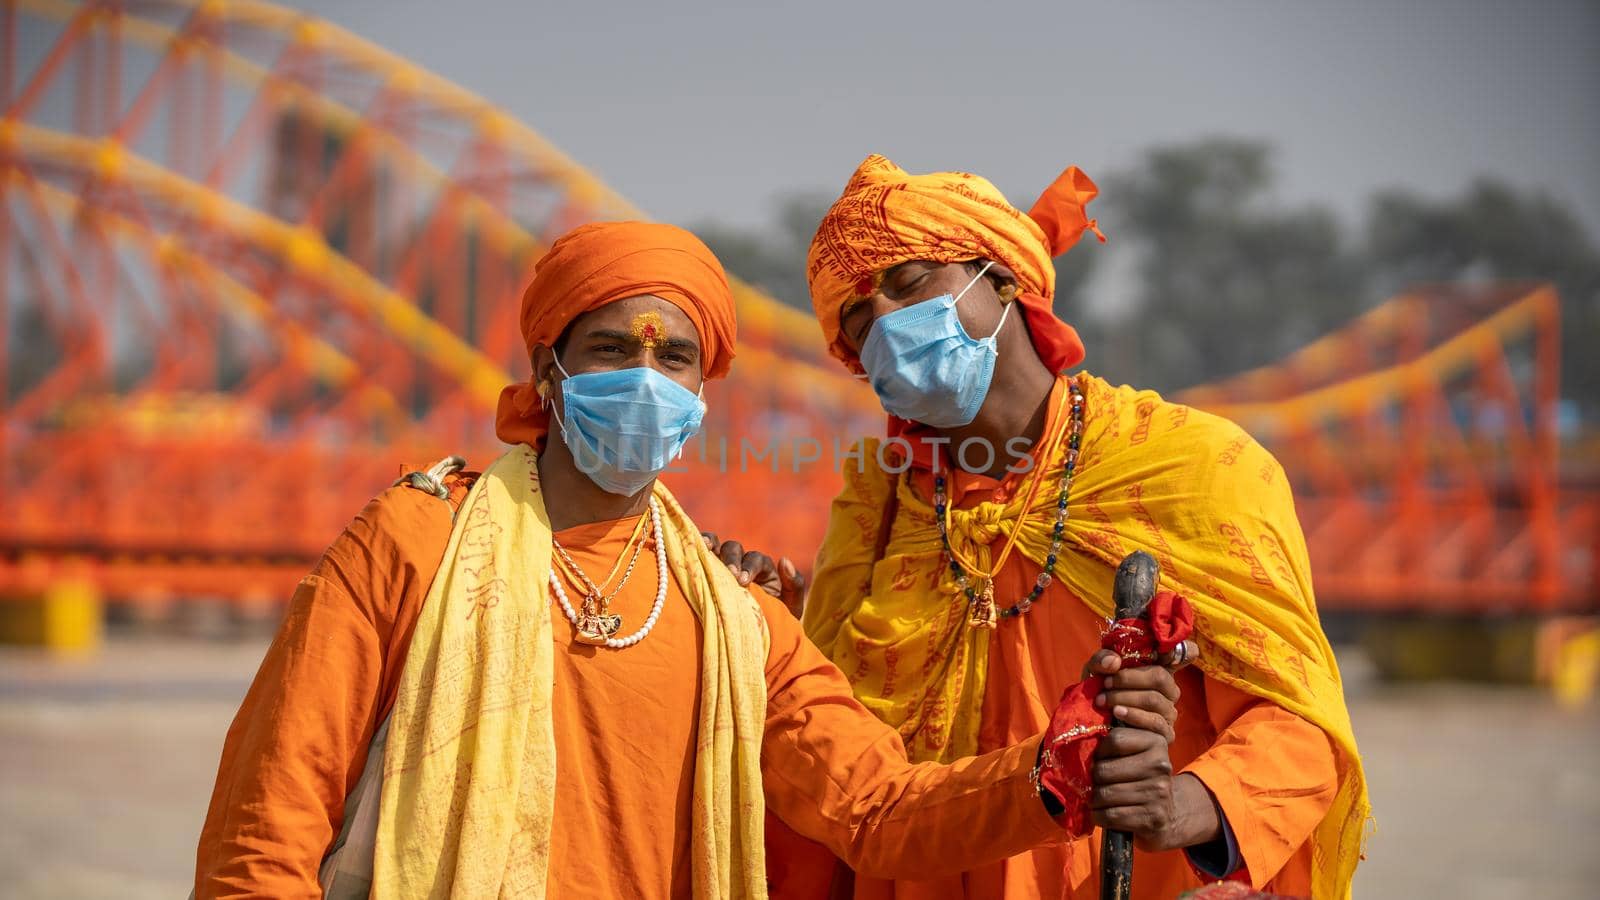 Indian saints at largest gathering festival Kumbh mela at Haridwar, Uttarakhand, India, wearing Coronavirus protection mask, Appleprores422 4k Cinetone by stocksvids